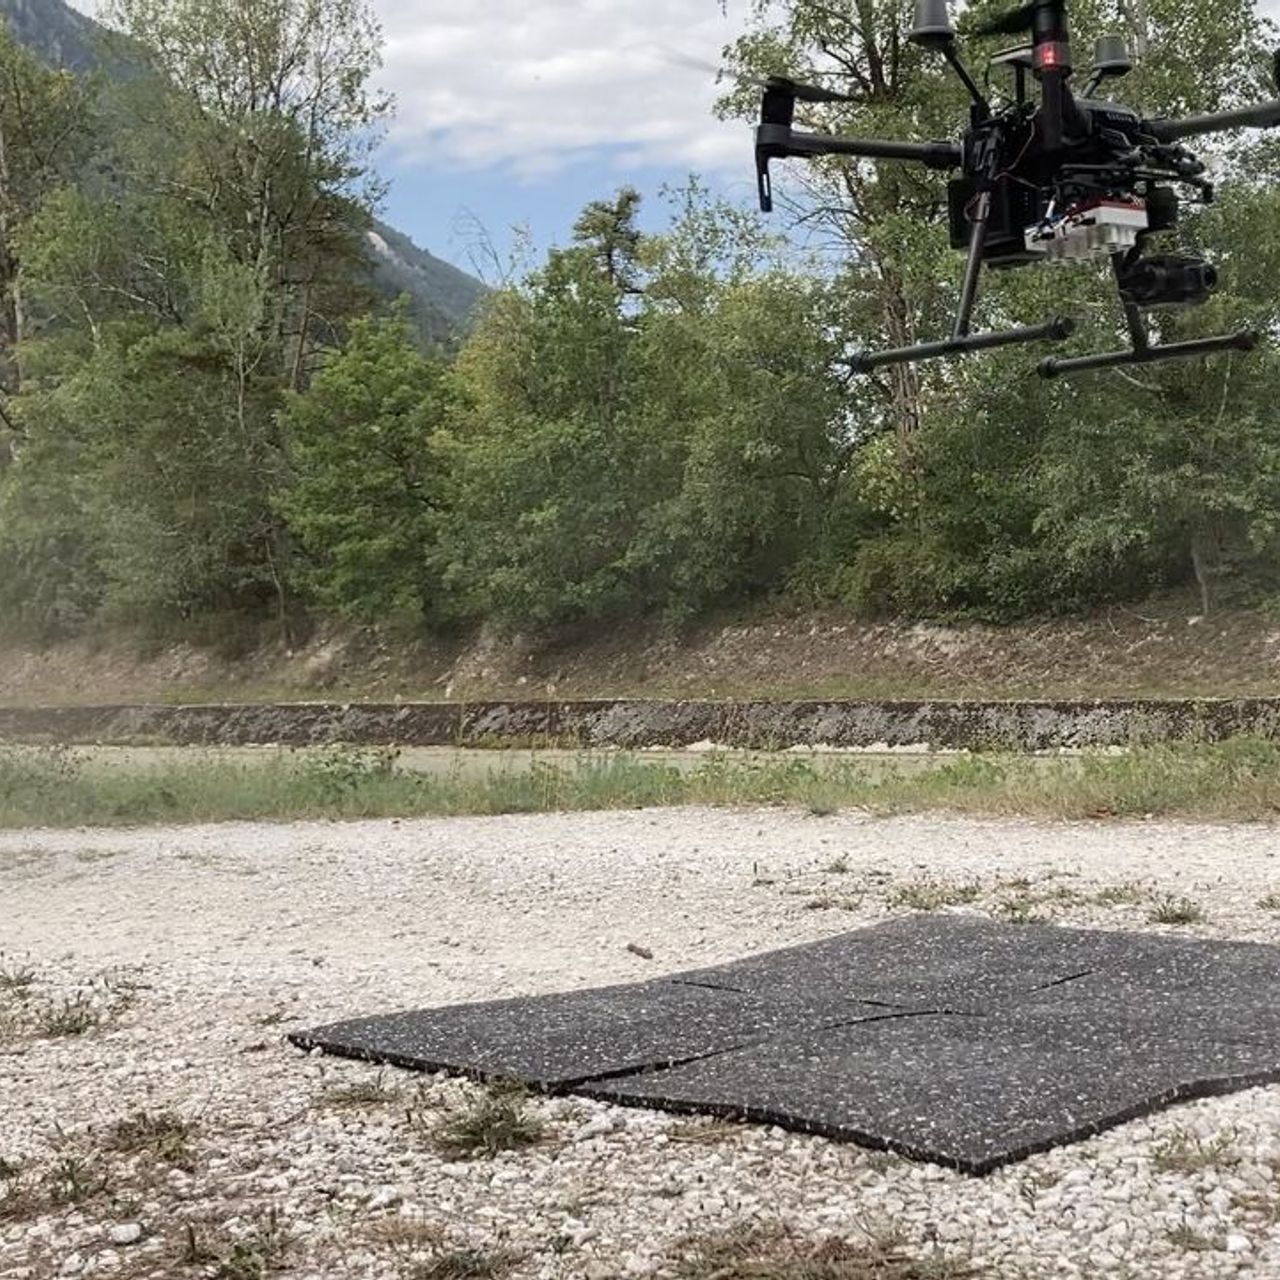 La ricercatrice Petra D'Odorico alle prese con il volo di un drone nel sito di ricerca forestale del Pfynwald, in Vallese, nell'estate del 2020 (Foto Frederik BaumgartenWSL)